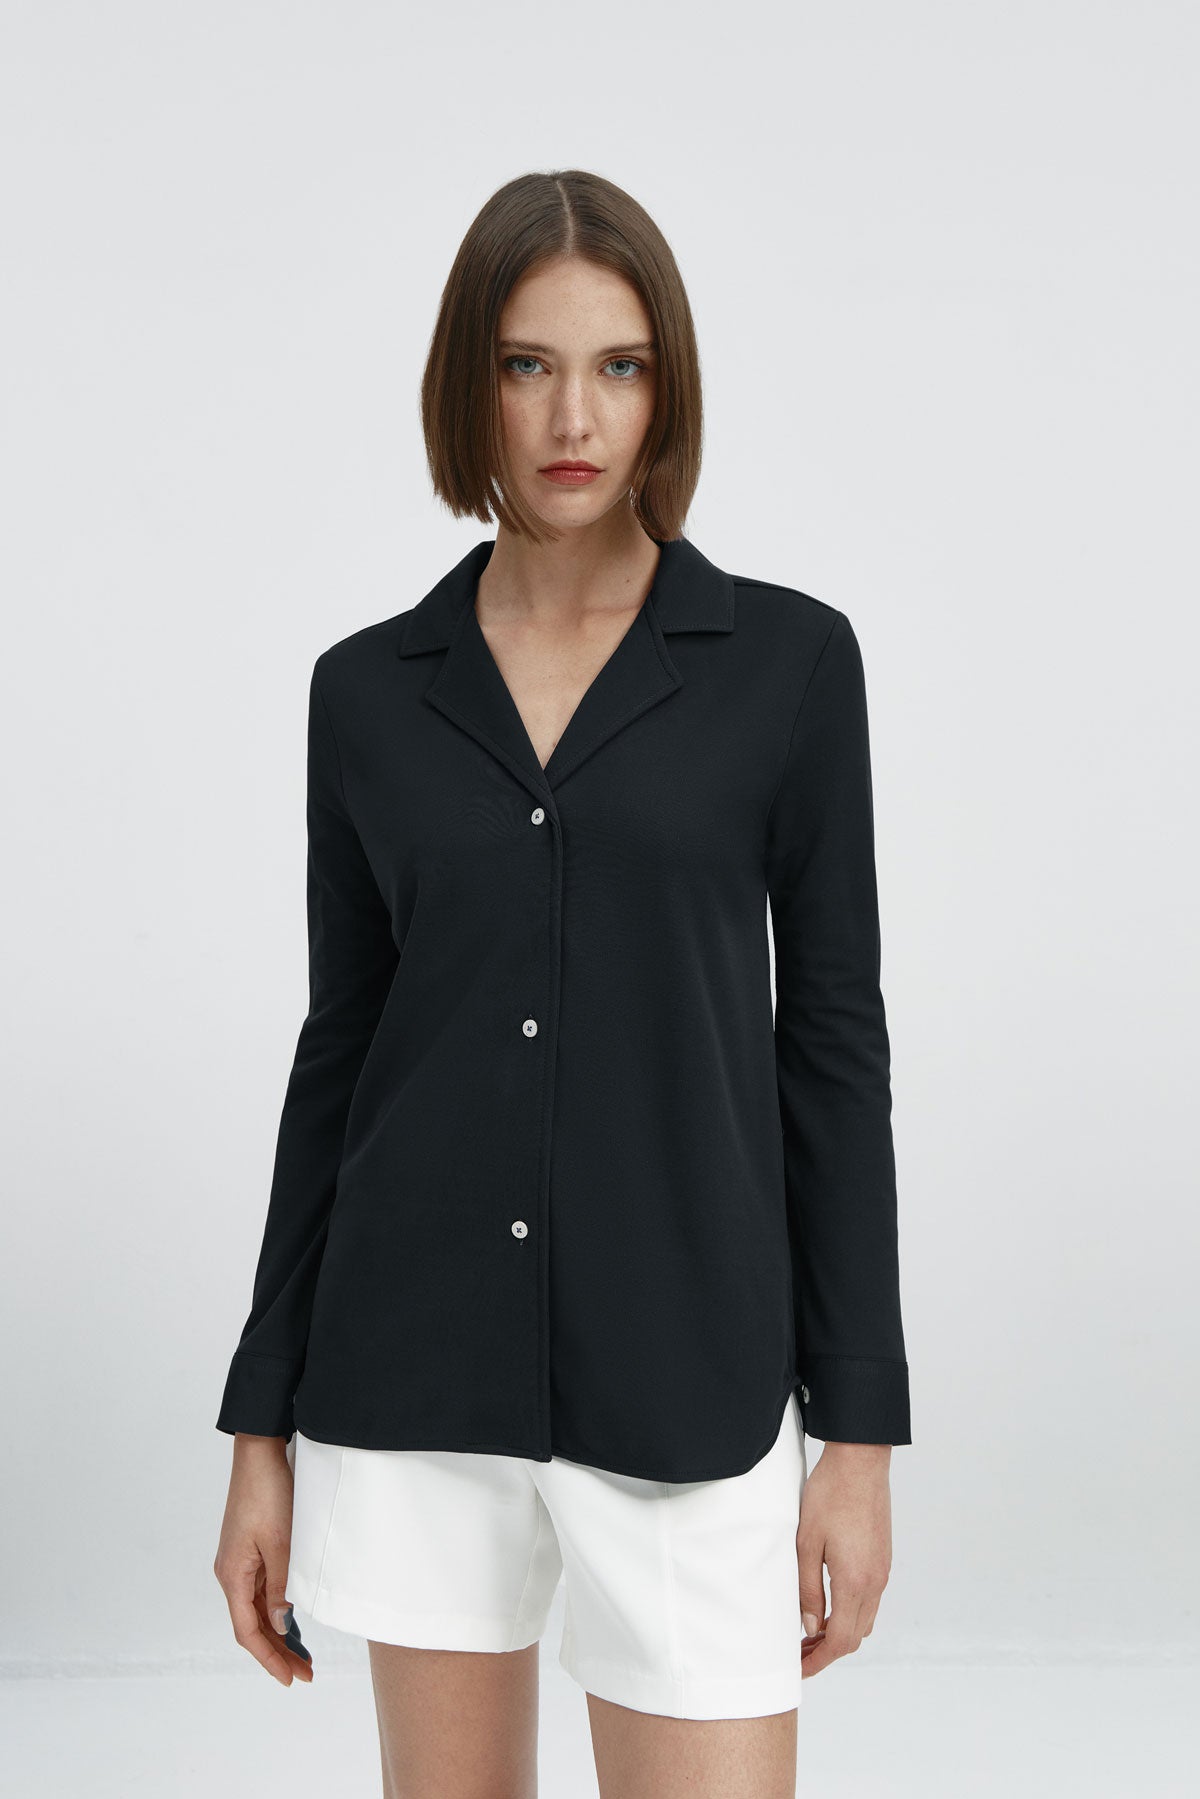 Camisa bowling de mujer negra de Sepiia, estilo y versatilidad en una prenda cómoda y resistente. Foto frente